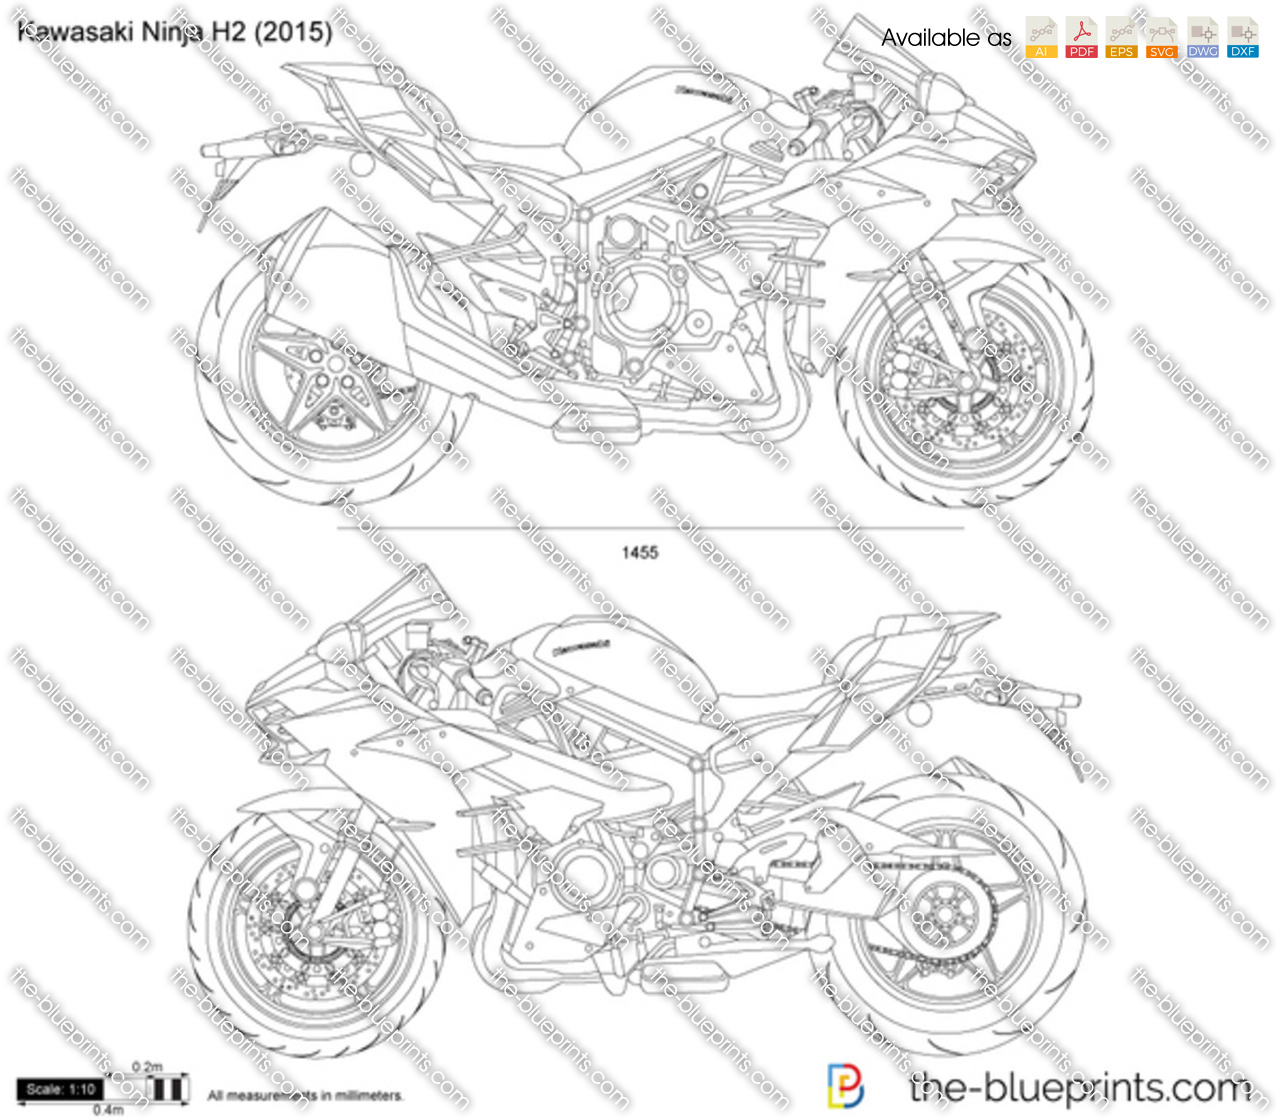 2021 Kawasaki Ninja H2R Specs Features Photos  wBW